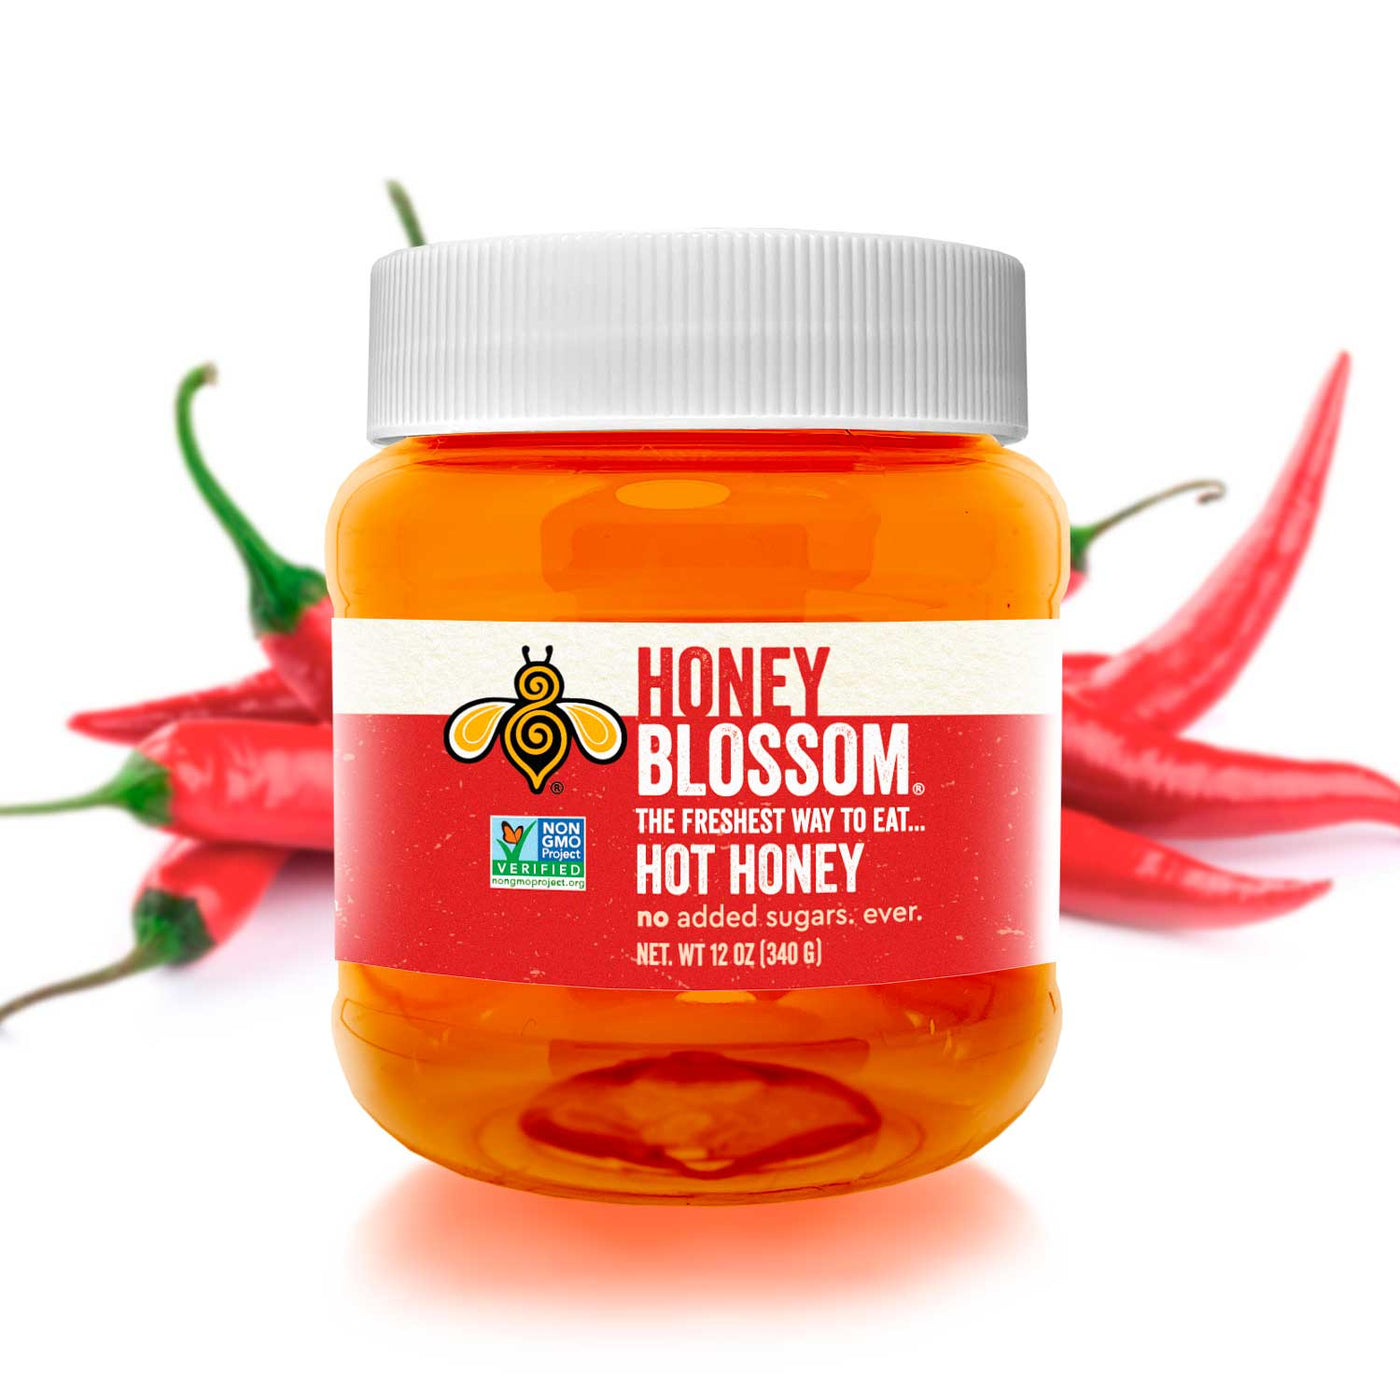 12 oz (340 g) Honey